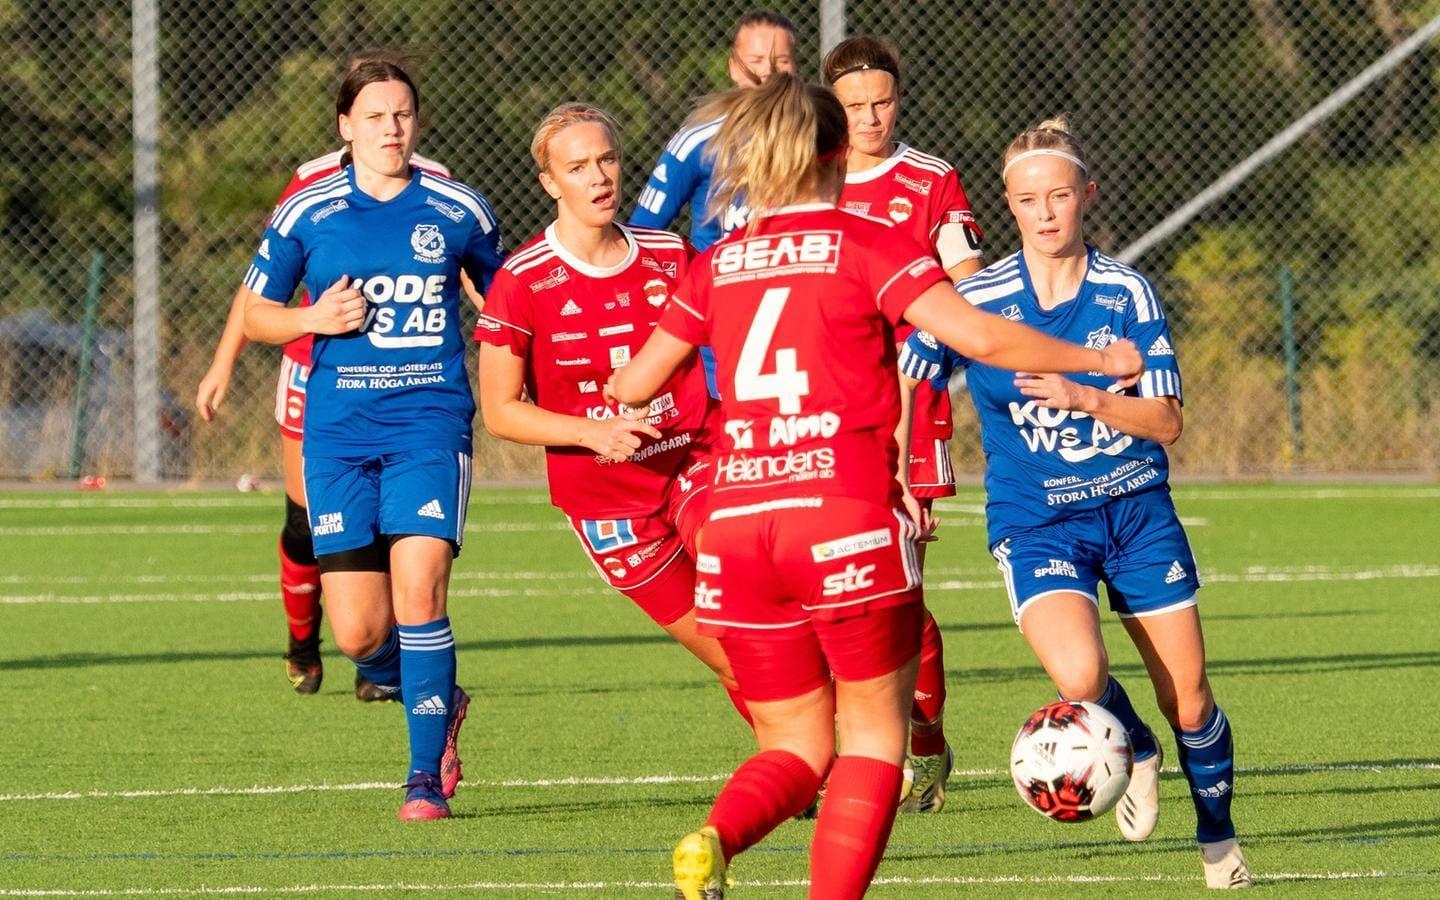 Vallens IF vann seriefinalen i Bohustrean i fotboll mot Stenungsunds IF med 3–0 inför hela 632 personer.